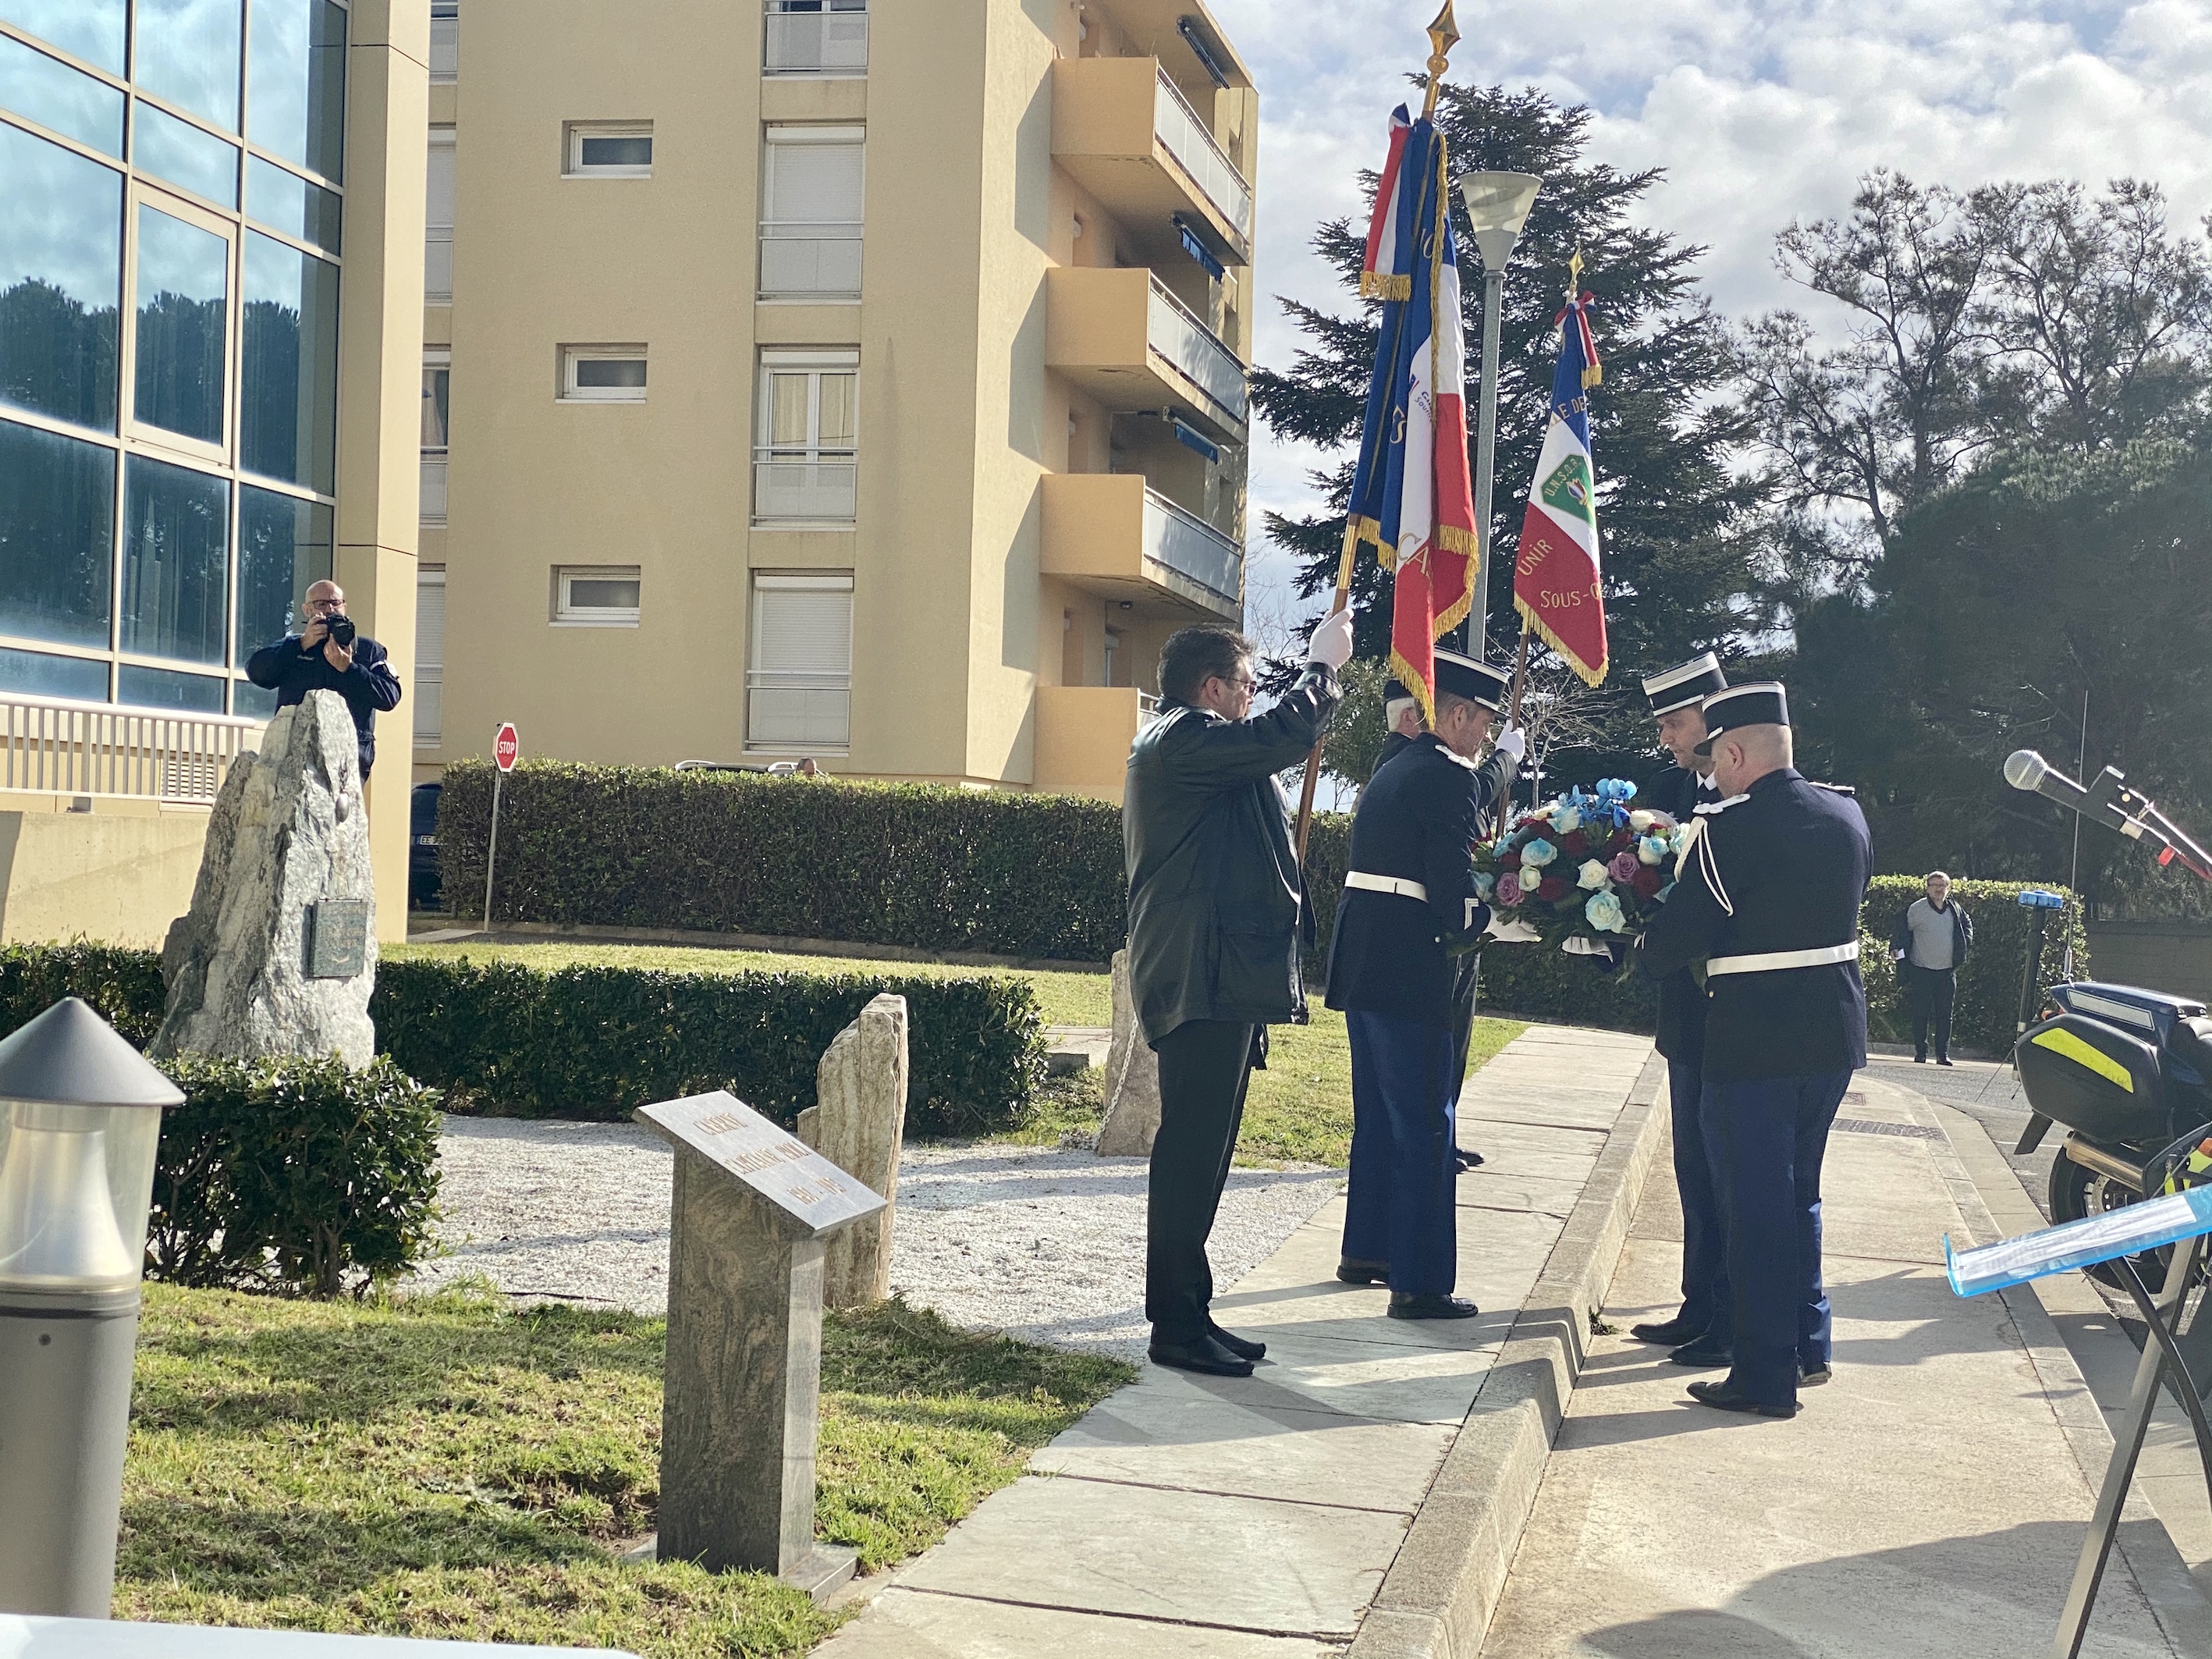 Les gendarmes de Bastia rendent hommage à leurs morts 